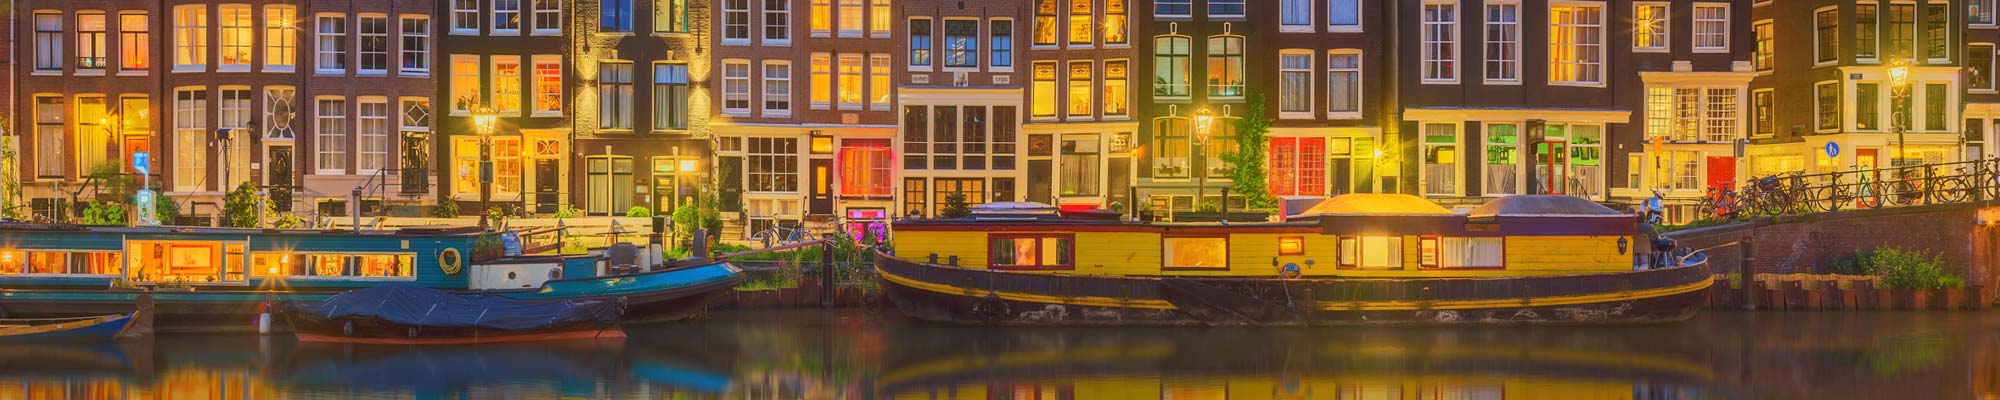 Symbolbild für den Paketversand in die Niederlande (Den Haag): Hausboote vor historischen Häusern